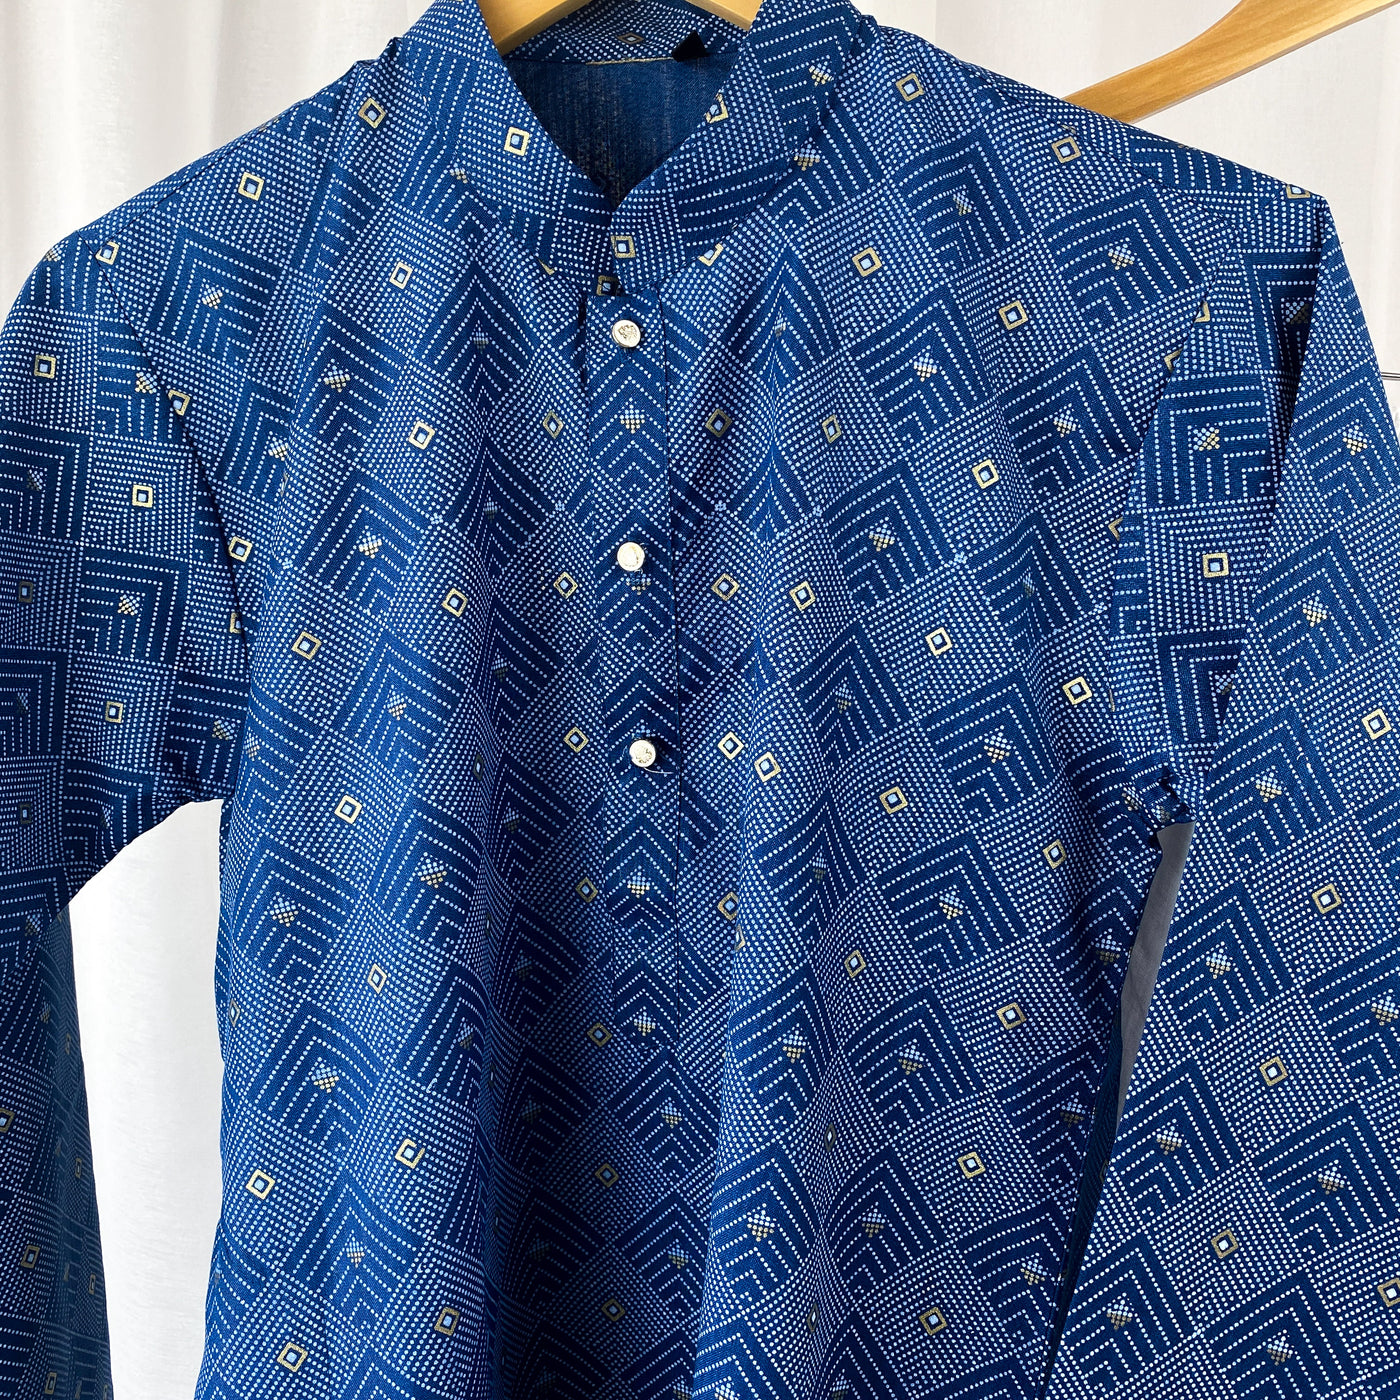 ANSH - Printed Blue Cotton Kurta Pajama